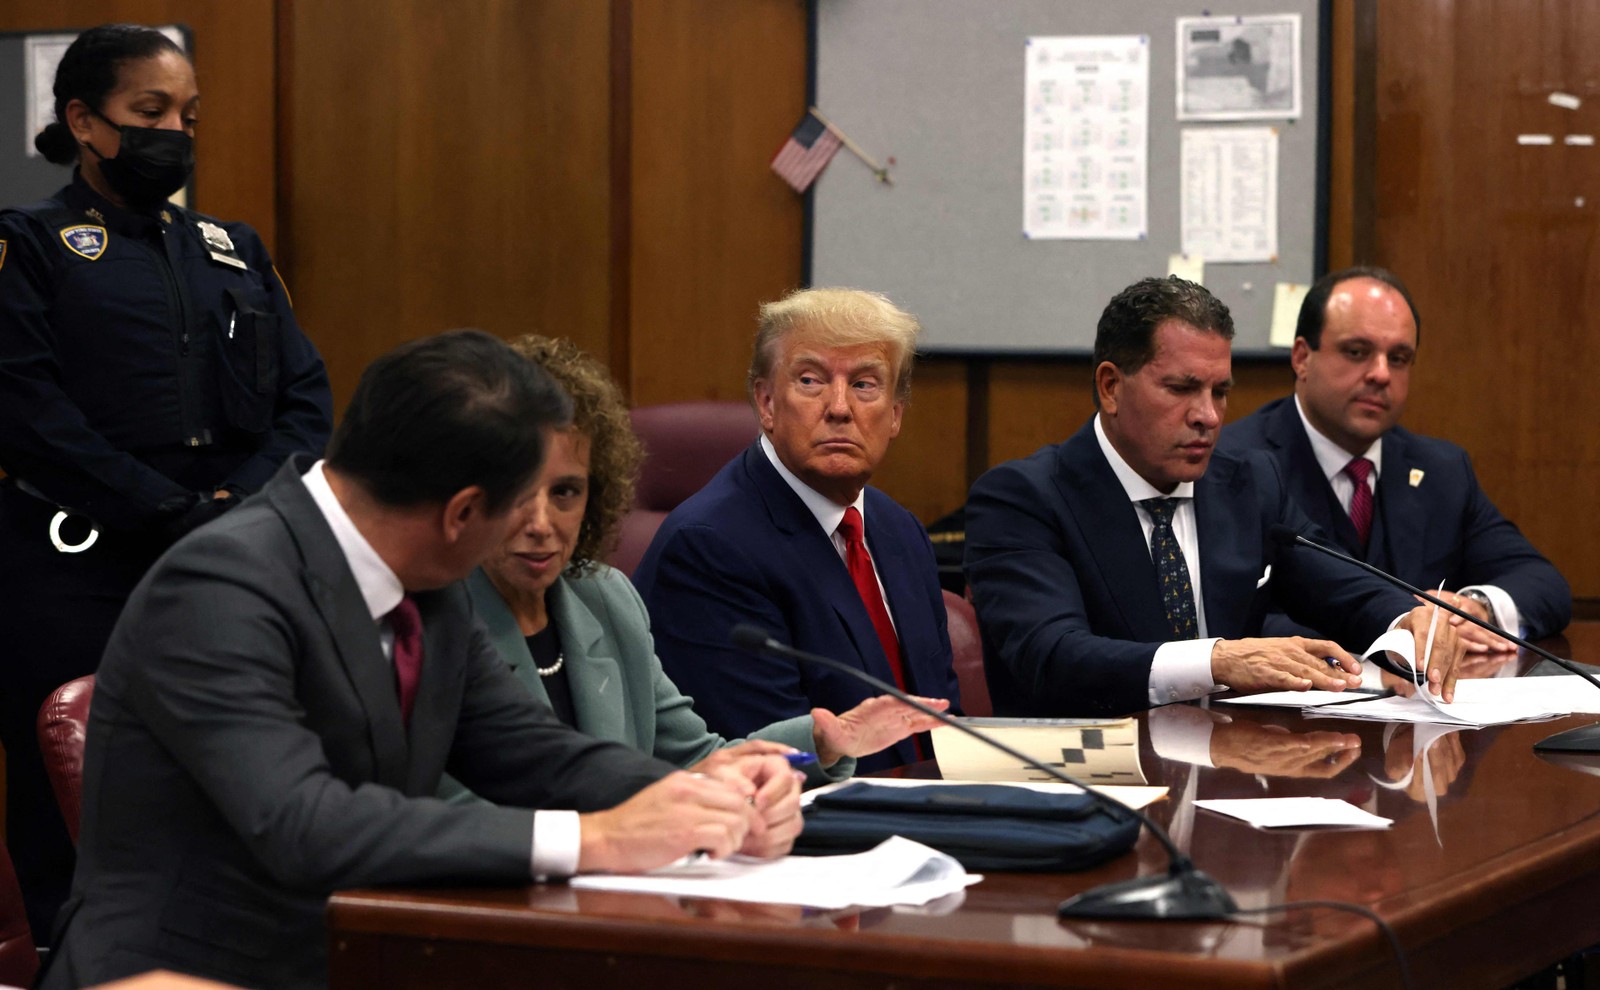 Trump tomou conhecimento das 34 acusações criminais referentes ao caso do suposto pagamento de suborno à atriz Stormy Daniels — Foto: Andrew KELLY / POOL / AFP